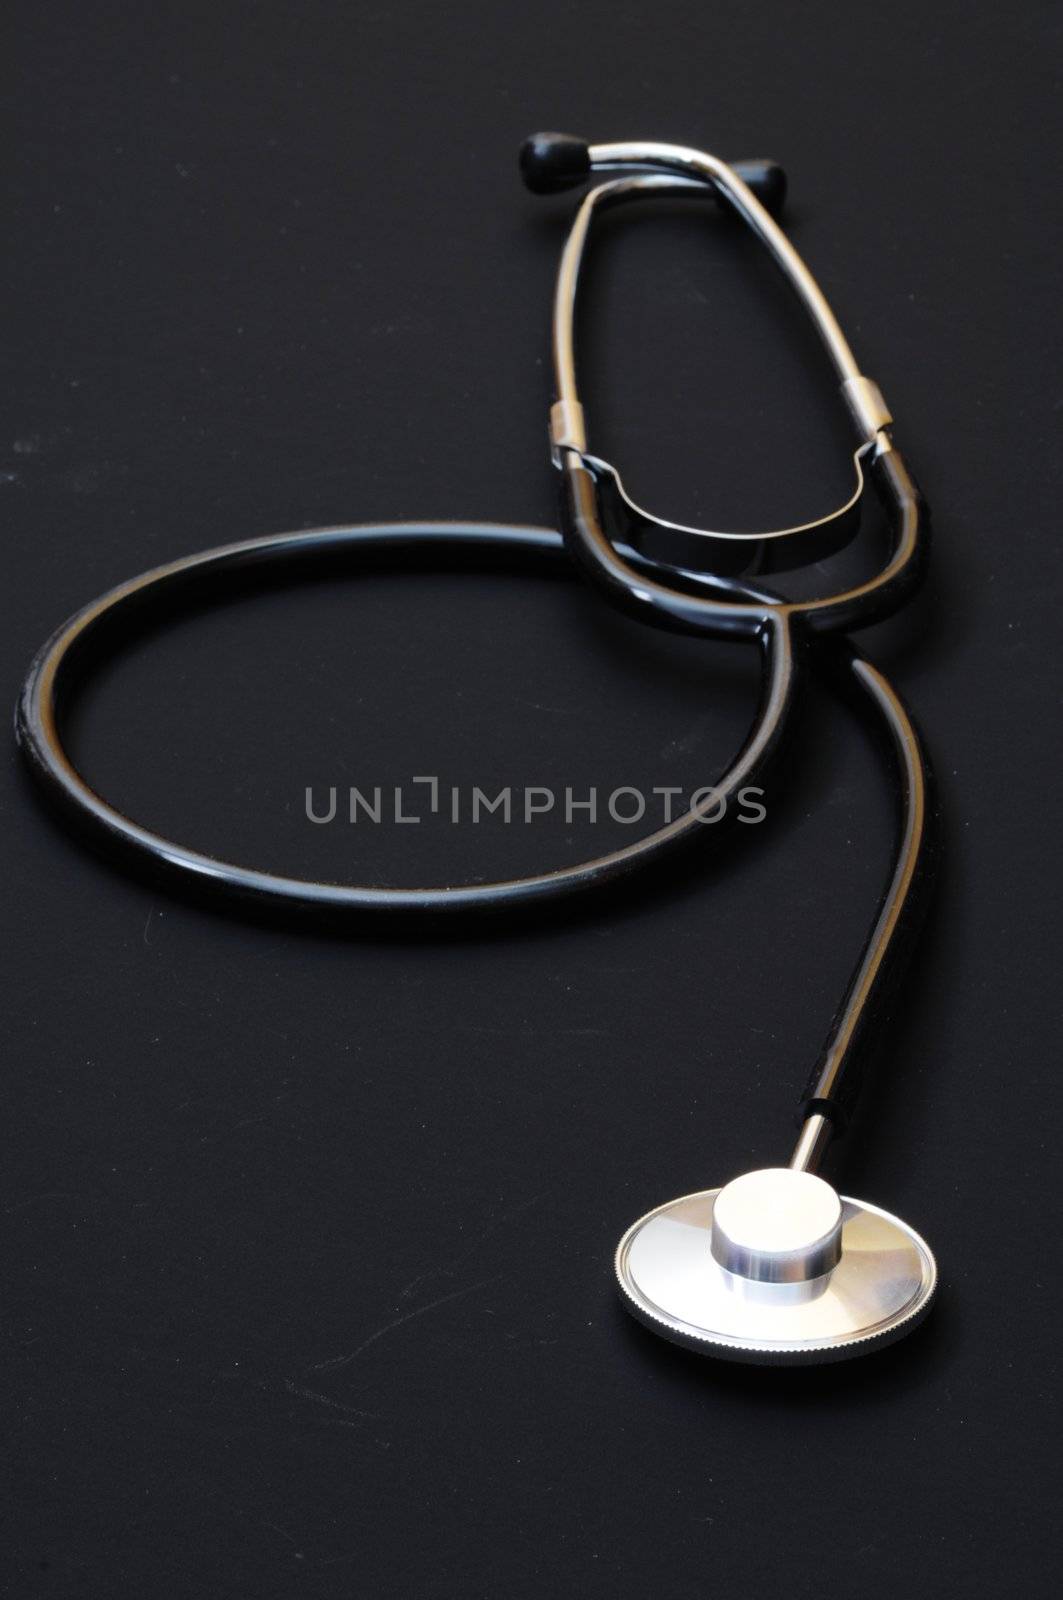 stethoscope on black by gunnar3000